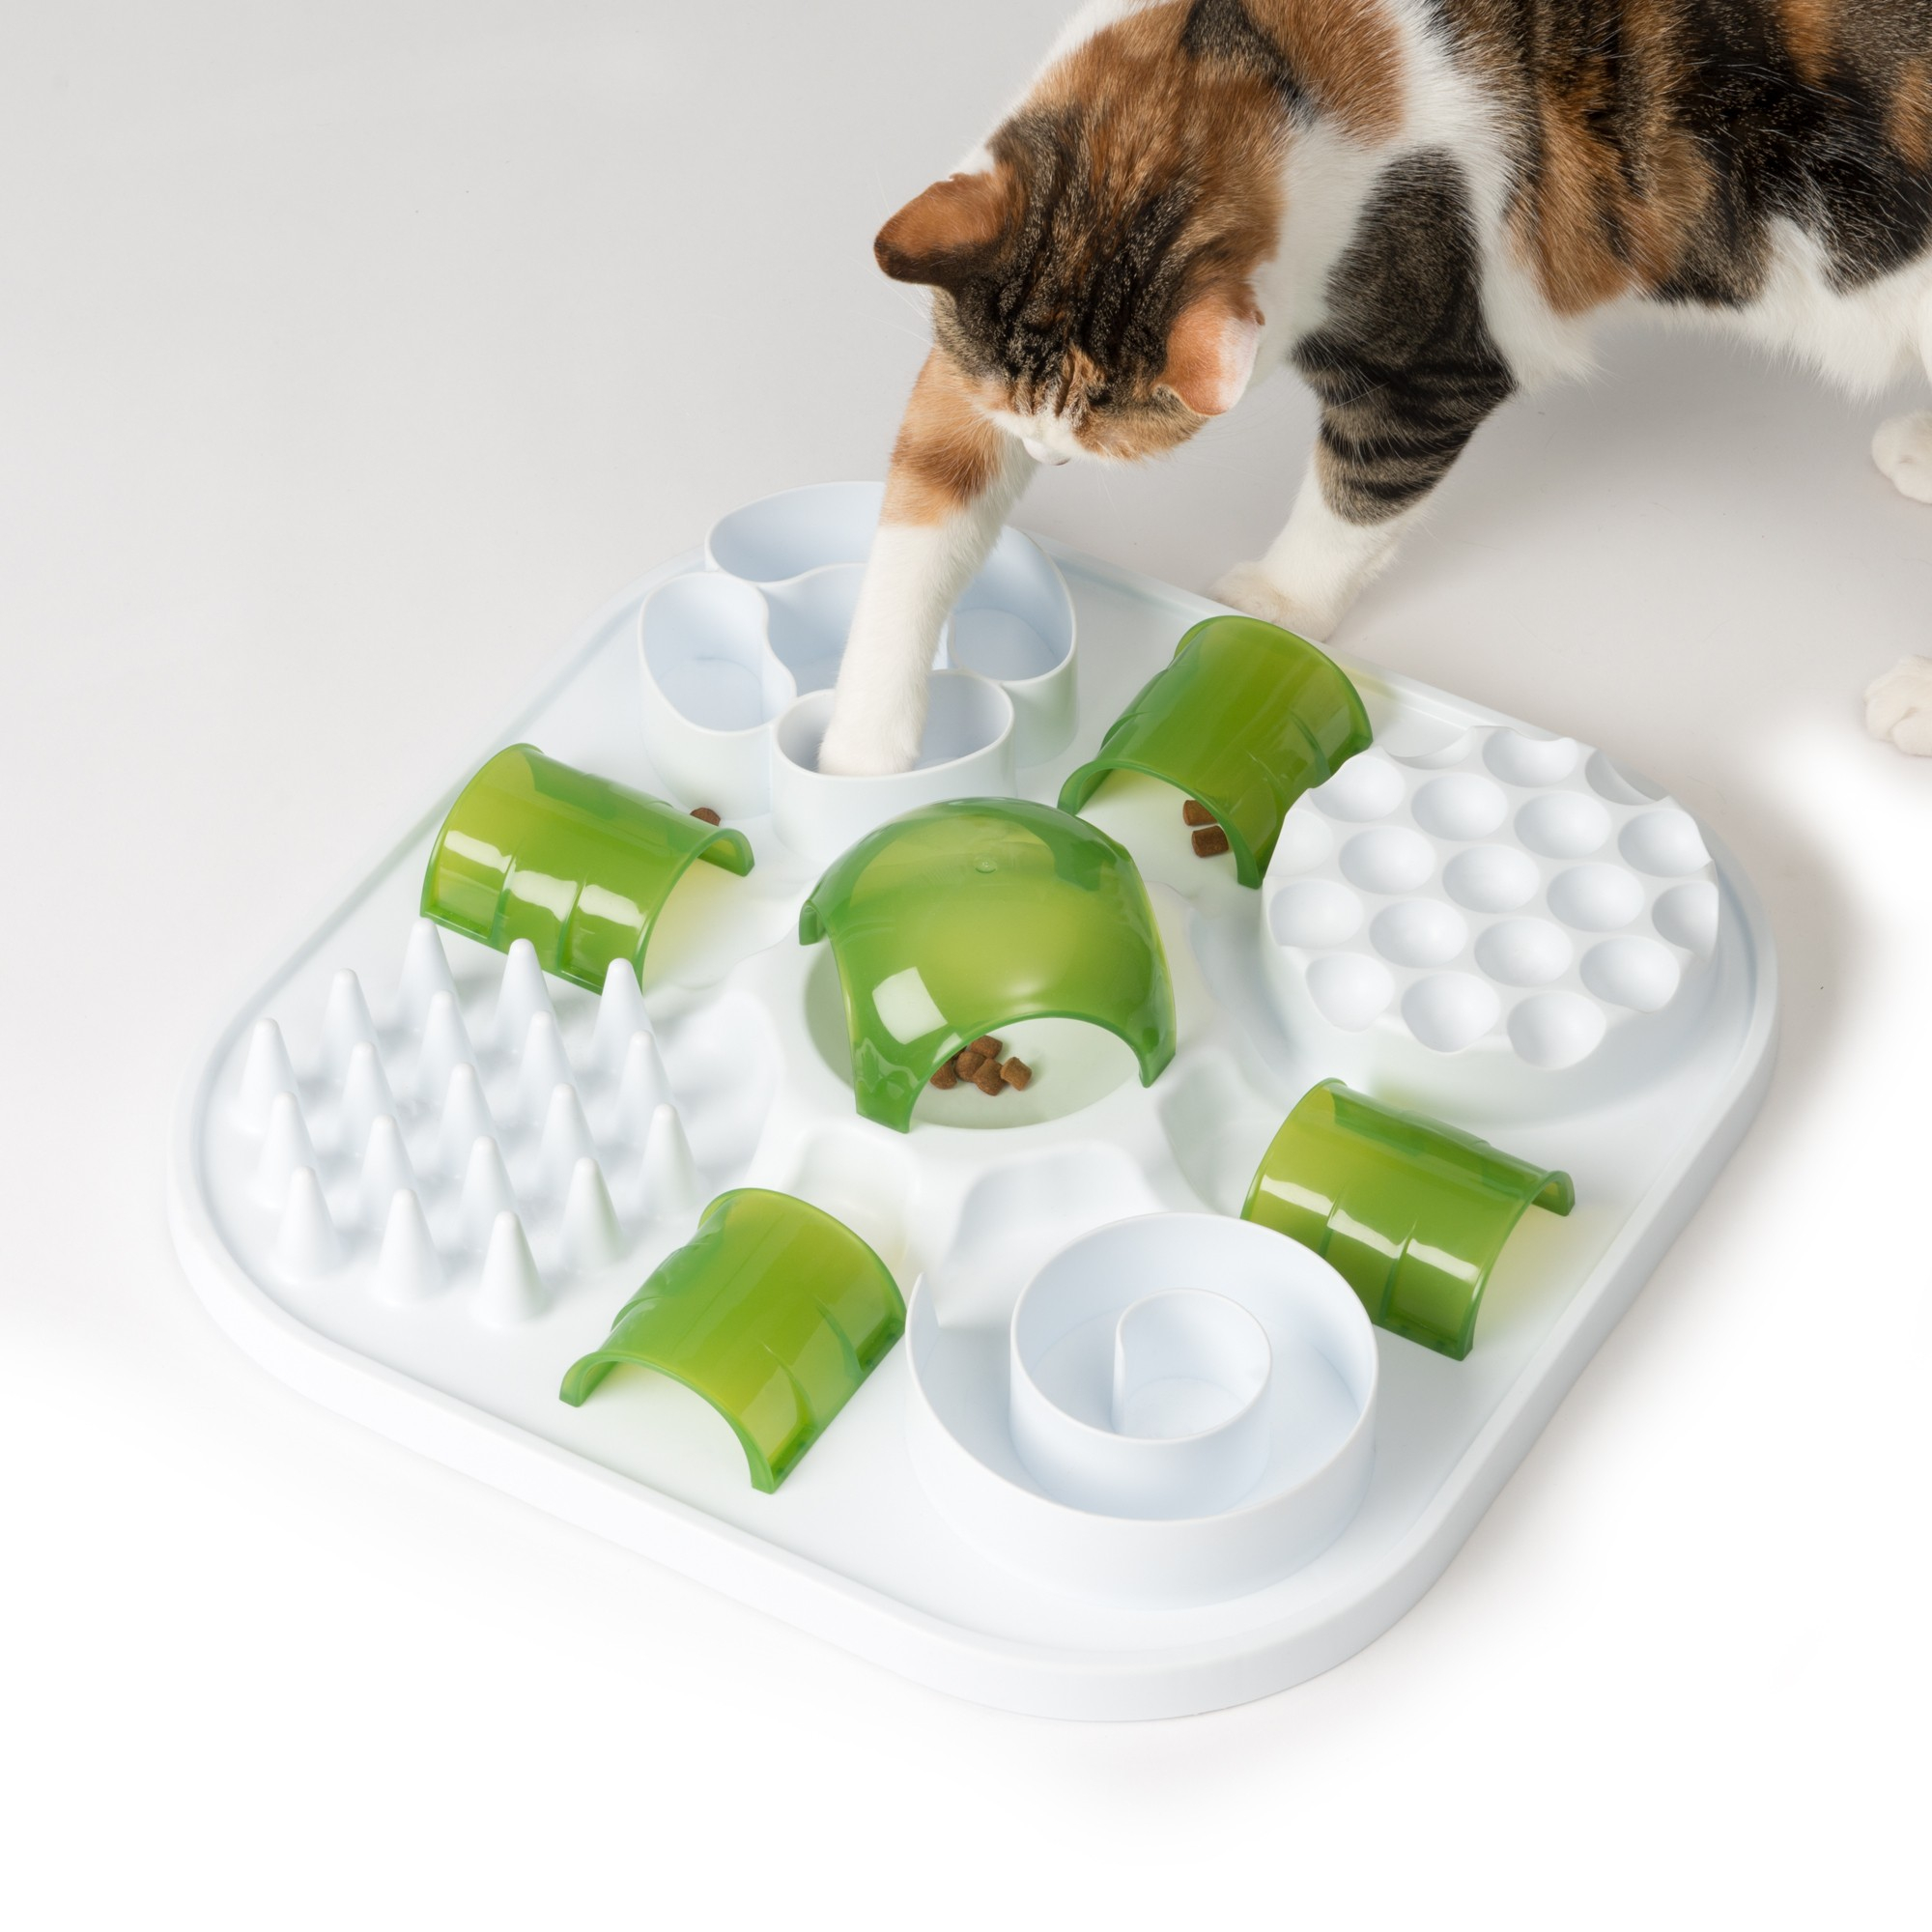 Puzzle per snack anti-ingozzamento per gatti Catit 2.0